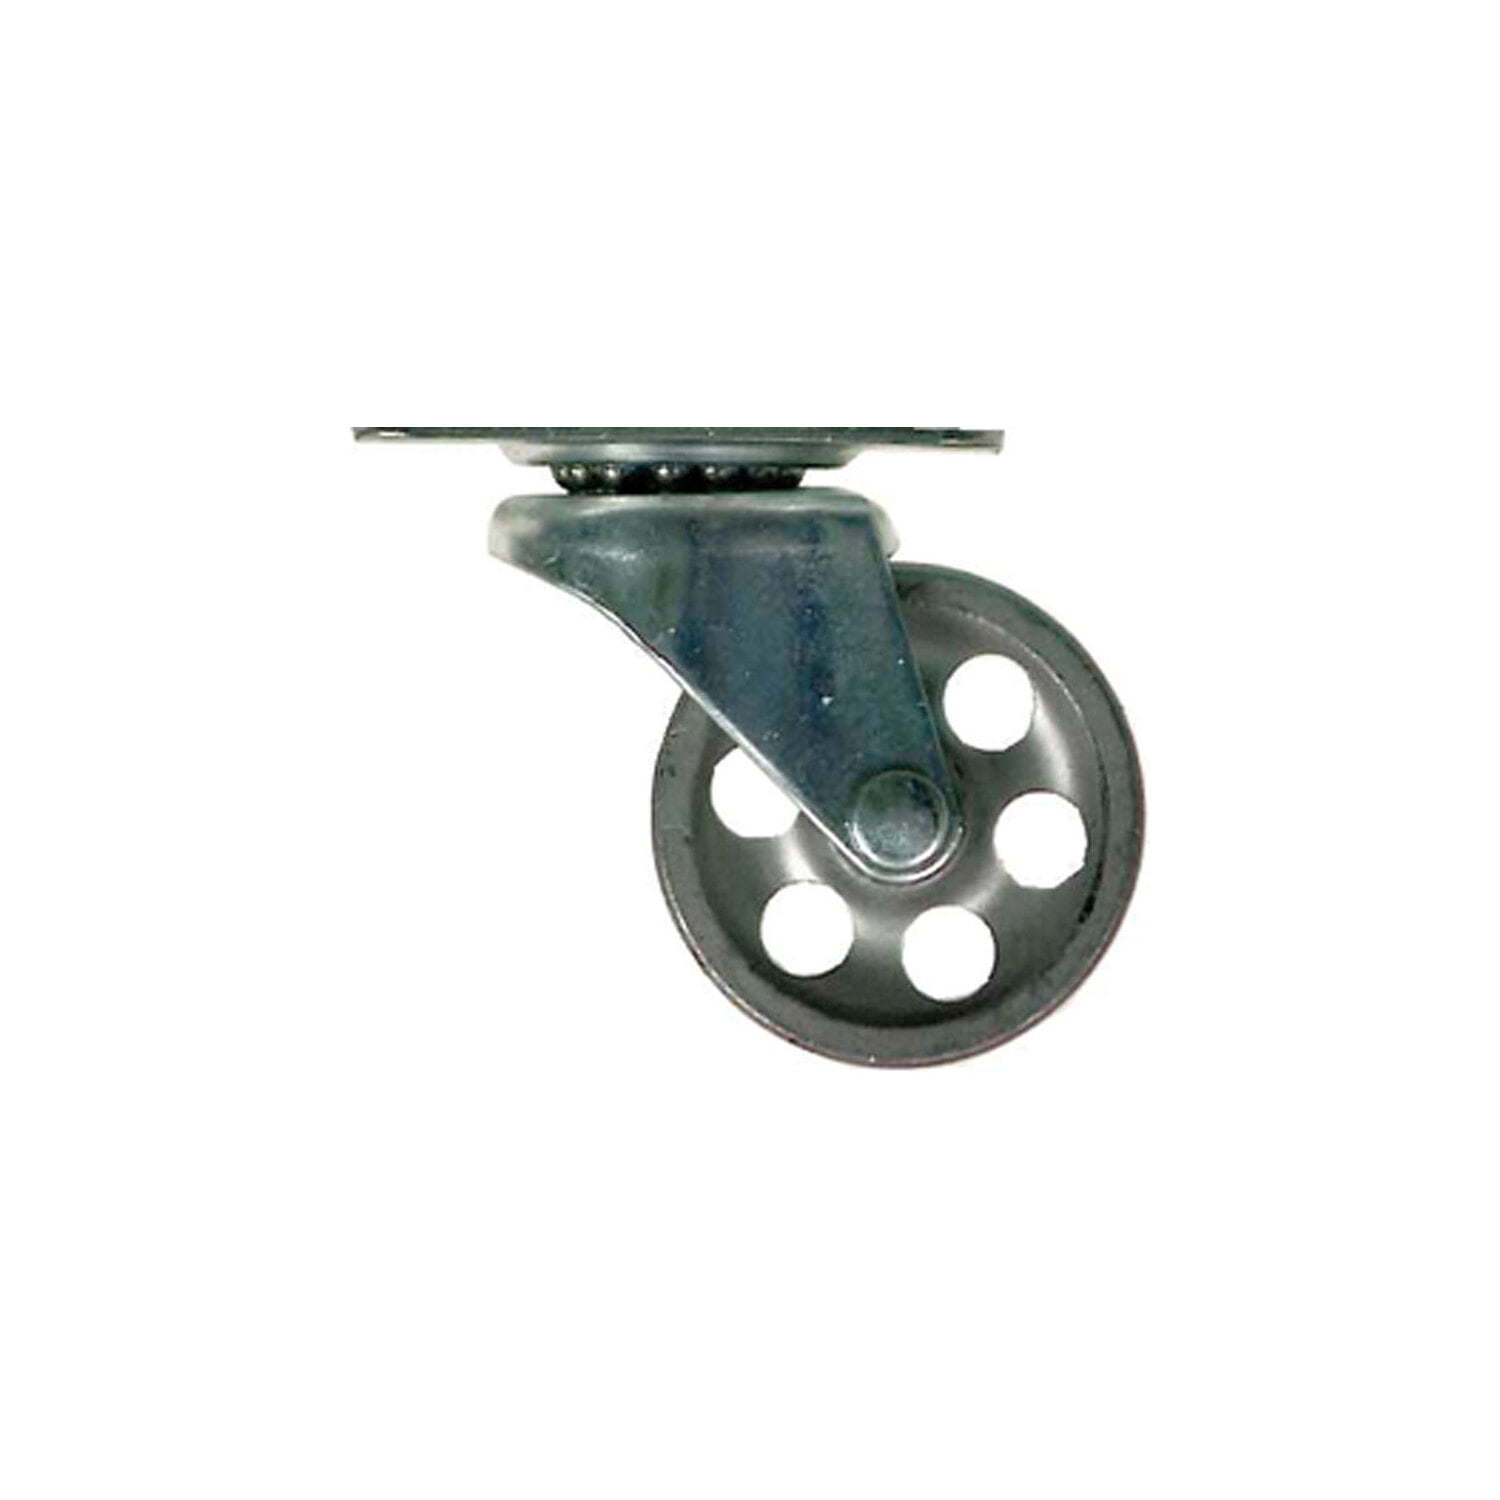 ea Shepherd Hardware # 9174 2" Inch Steel Wheel Swivel Plate Caster 8 